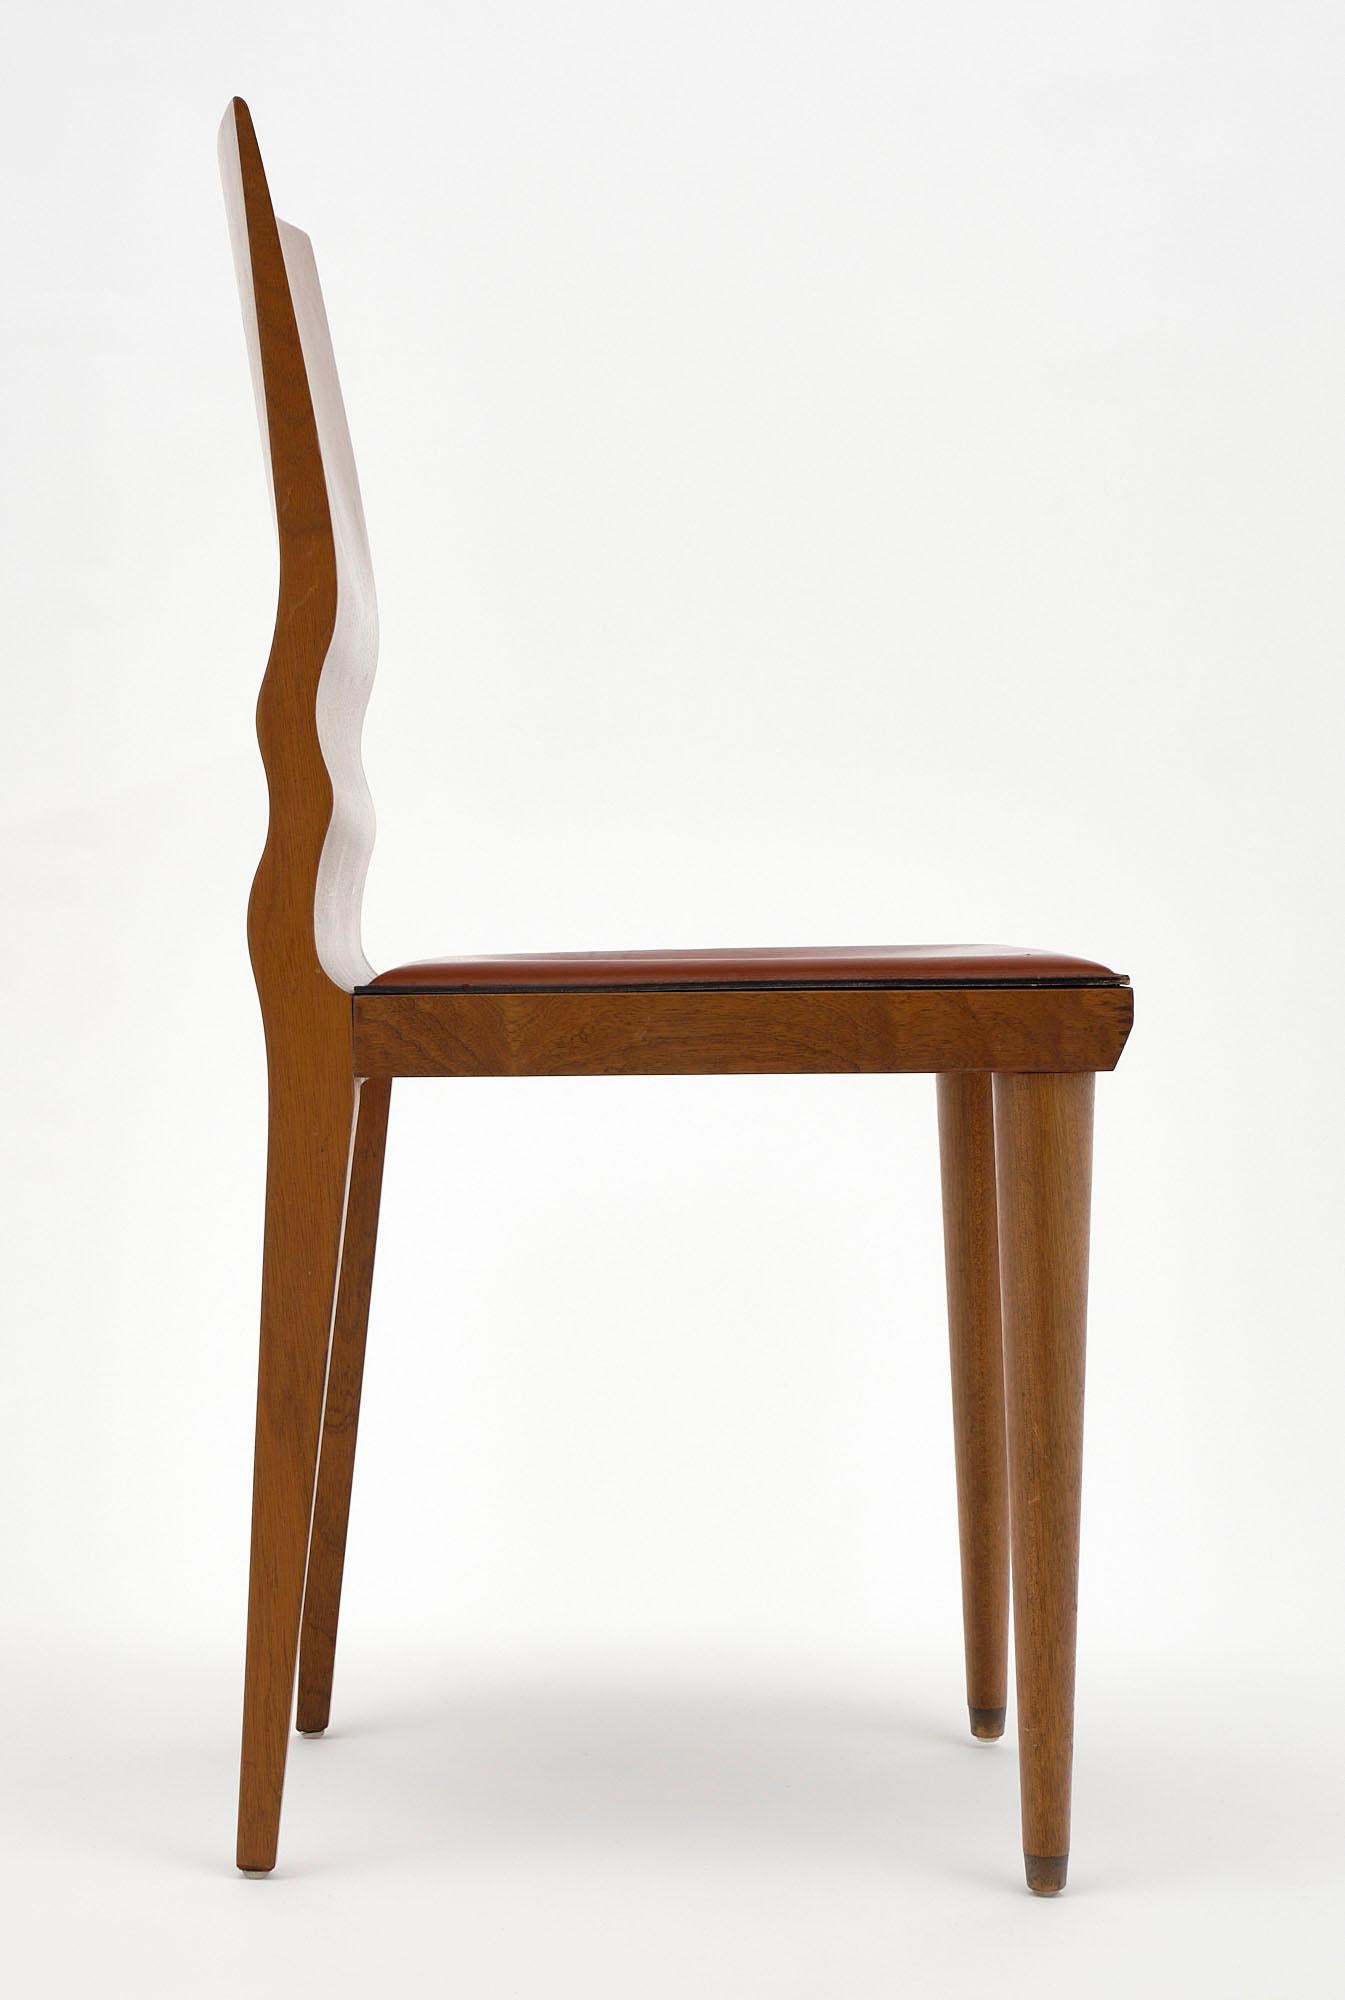 Set of Four 'Diva' Chairs by William Sawaya, Sawaya & Moroni 1